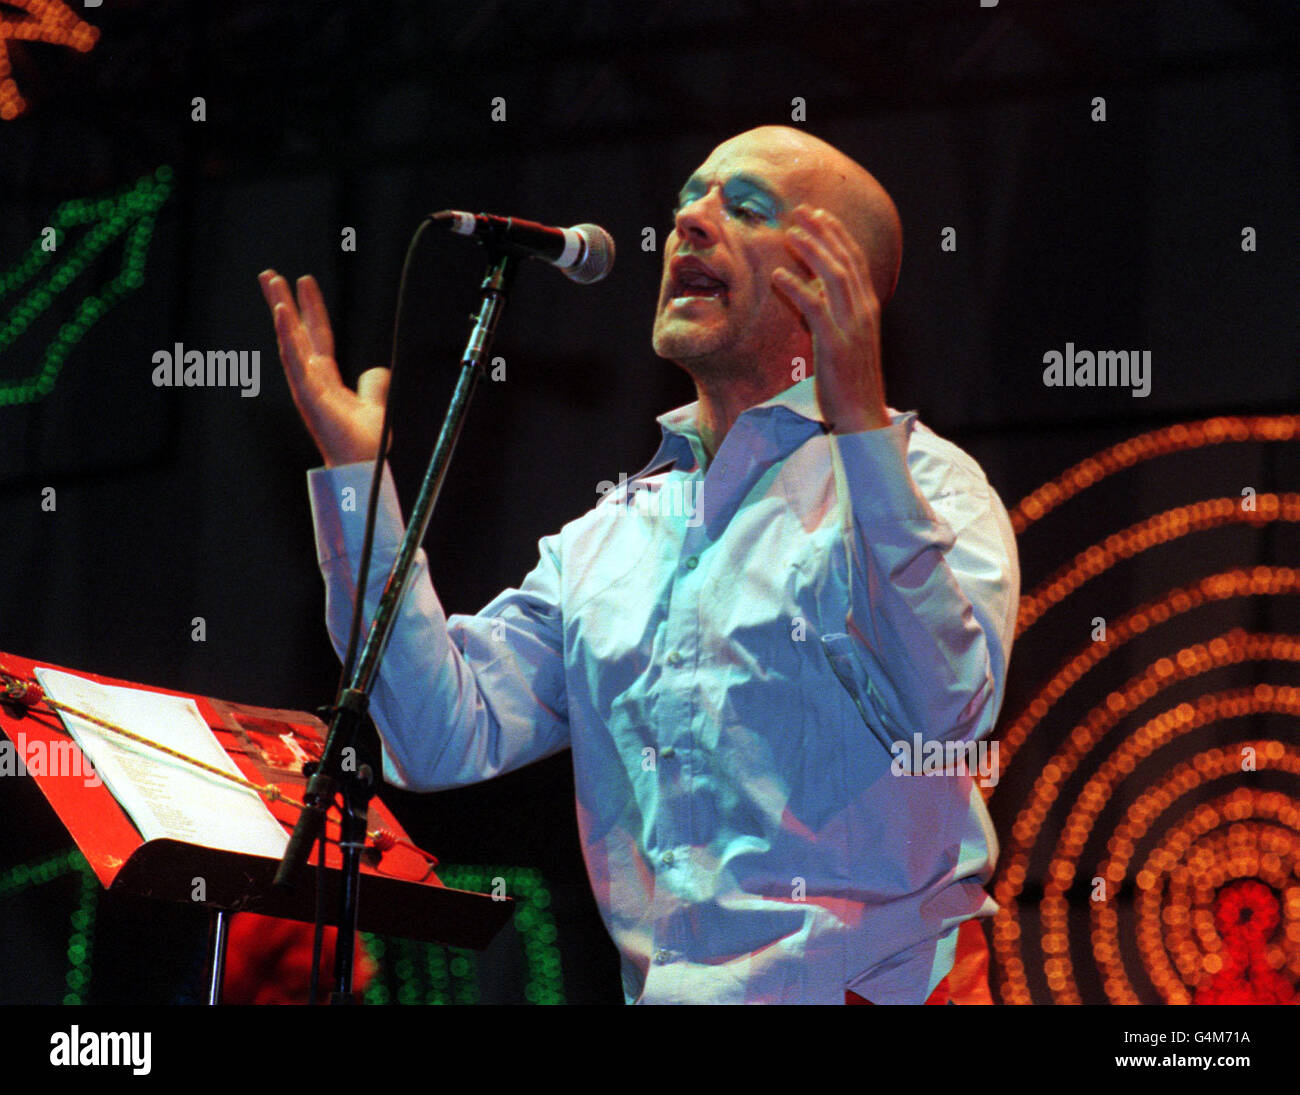 Michael Stipe, chanteur principal du groupe 'R.E.M.', sur la Pyramid Stage pendant le titre de R.E.M du Glastonbury Festival 1999. Banque D'Images